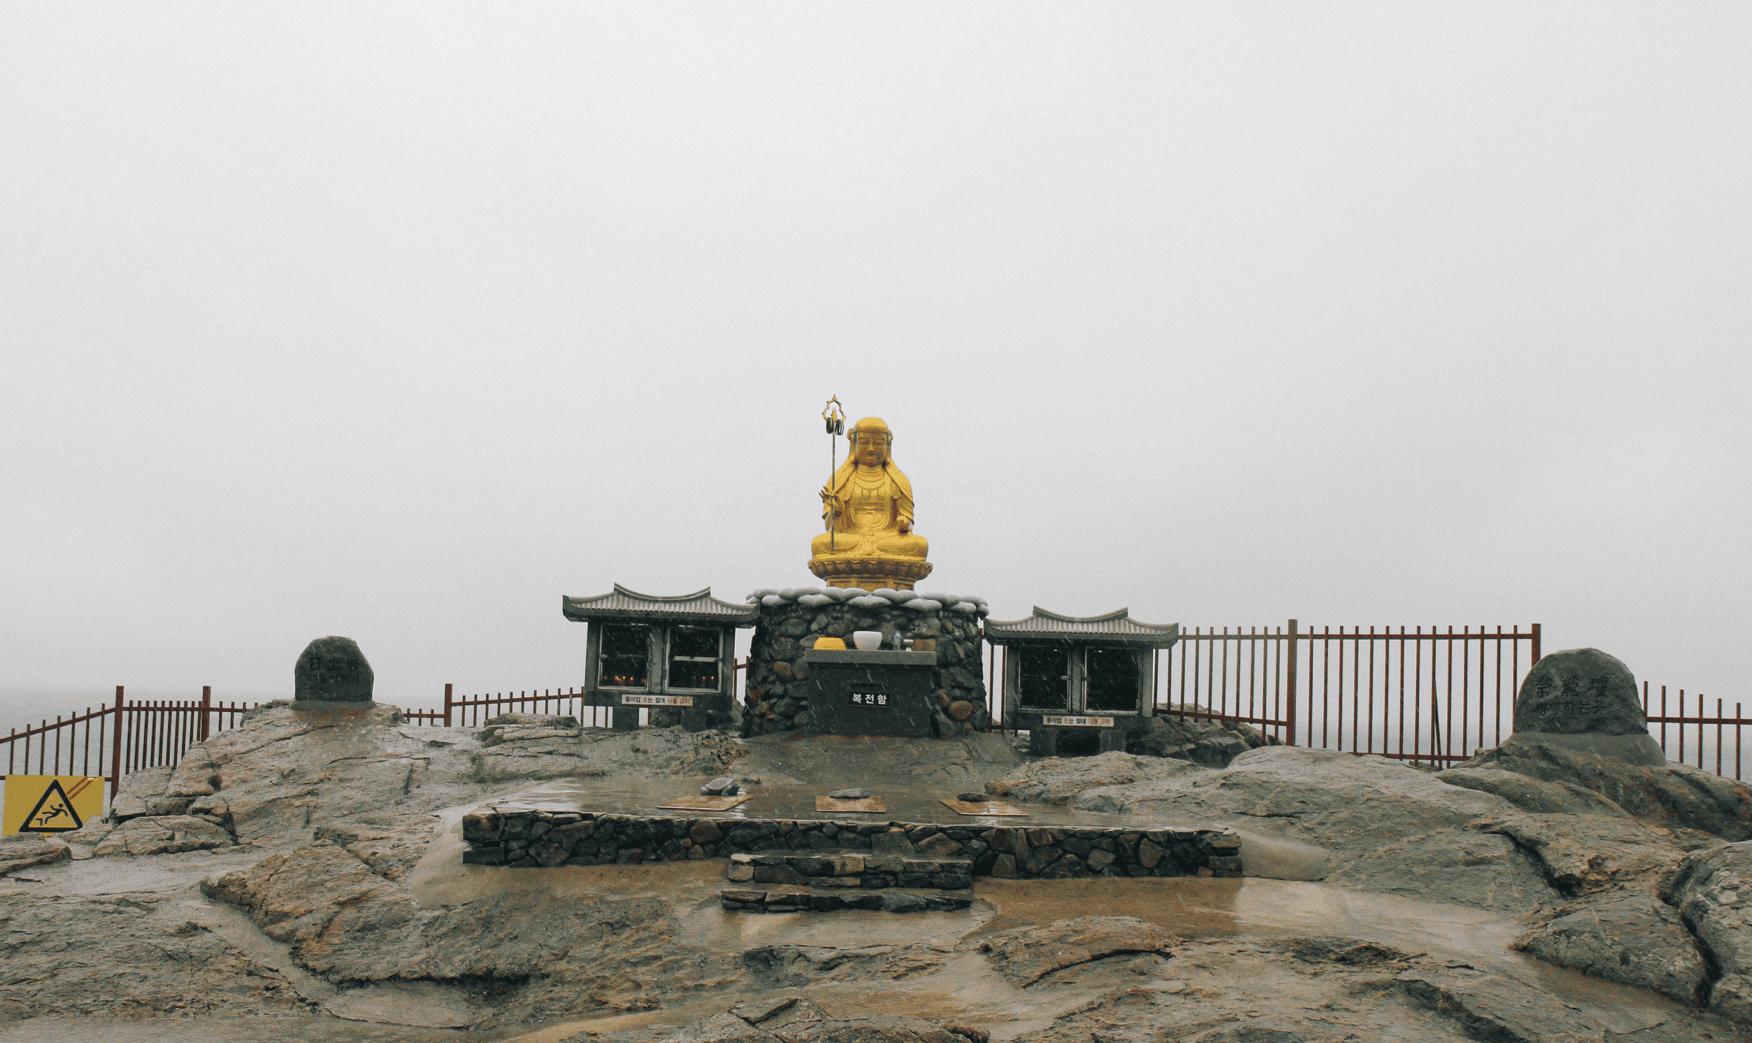 Buddha statue at Haedong Yonggungsa Temple